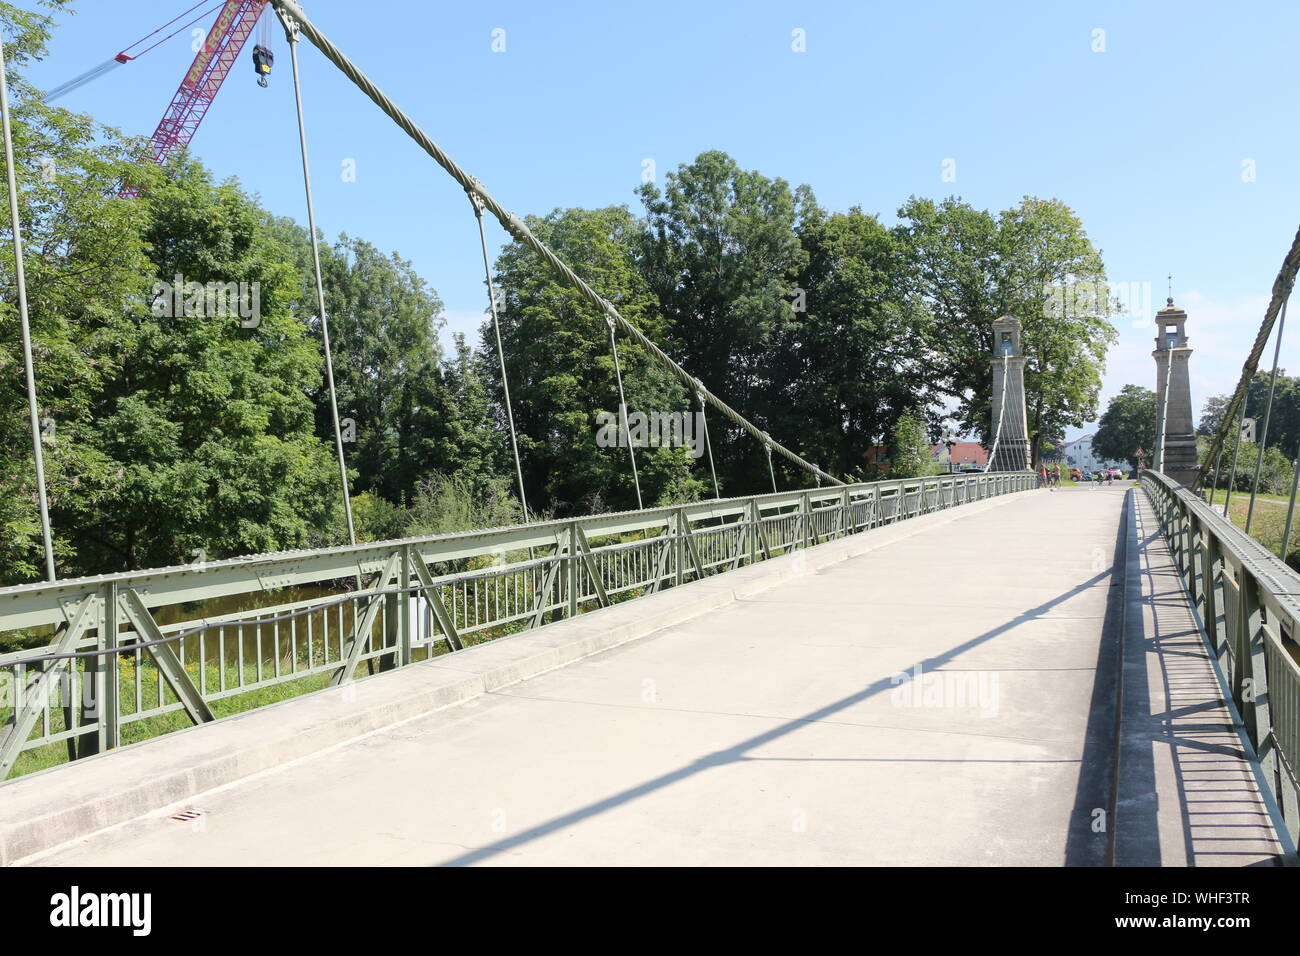 Die berühmte Hängebrücke in Langenargen am Bodensee Stock Photo